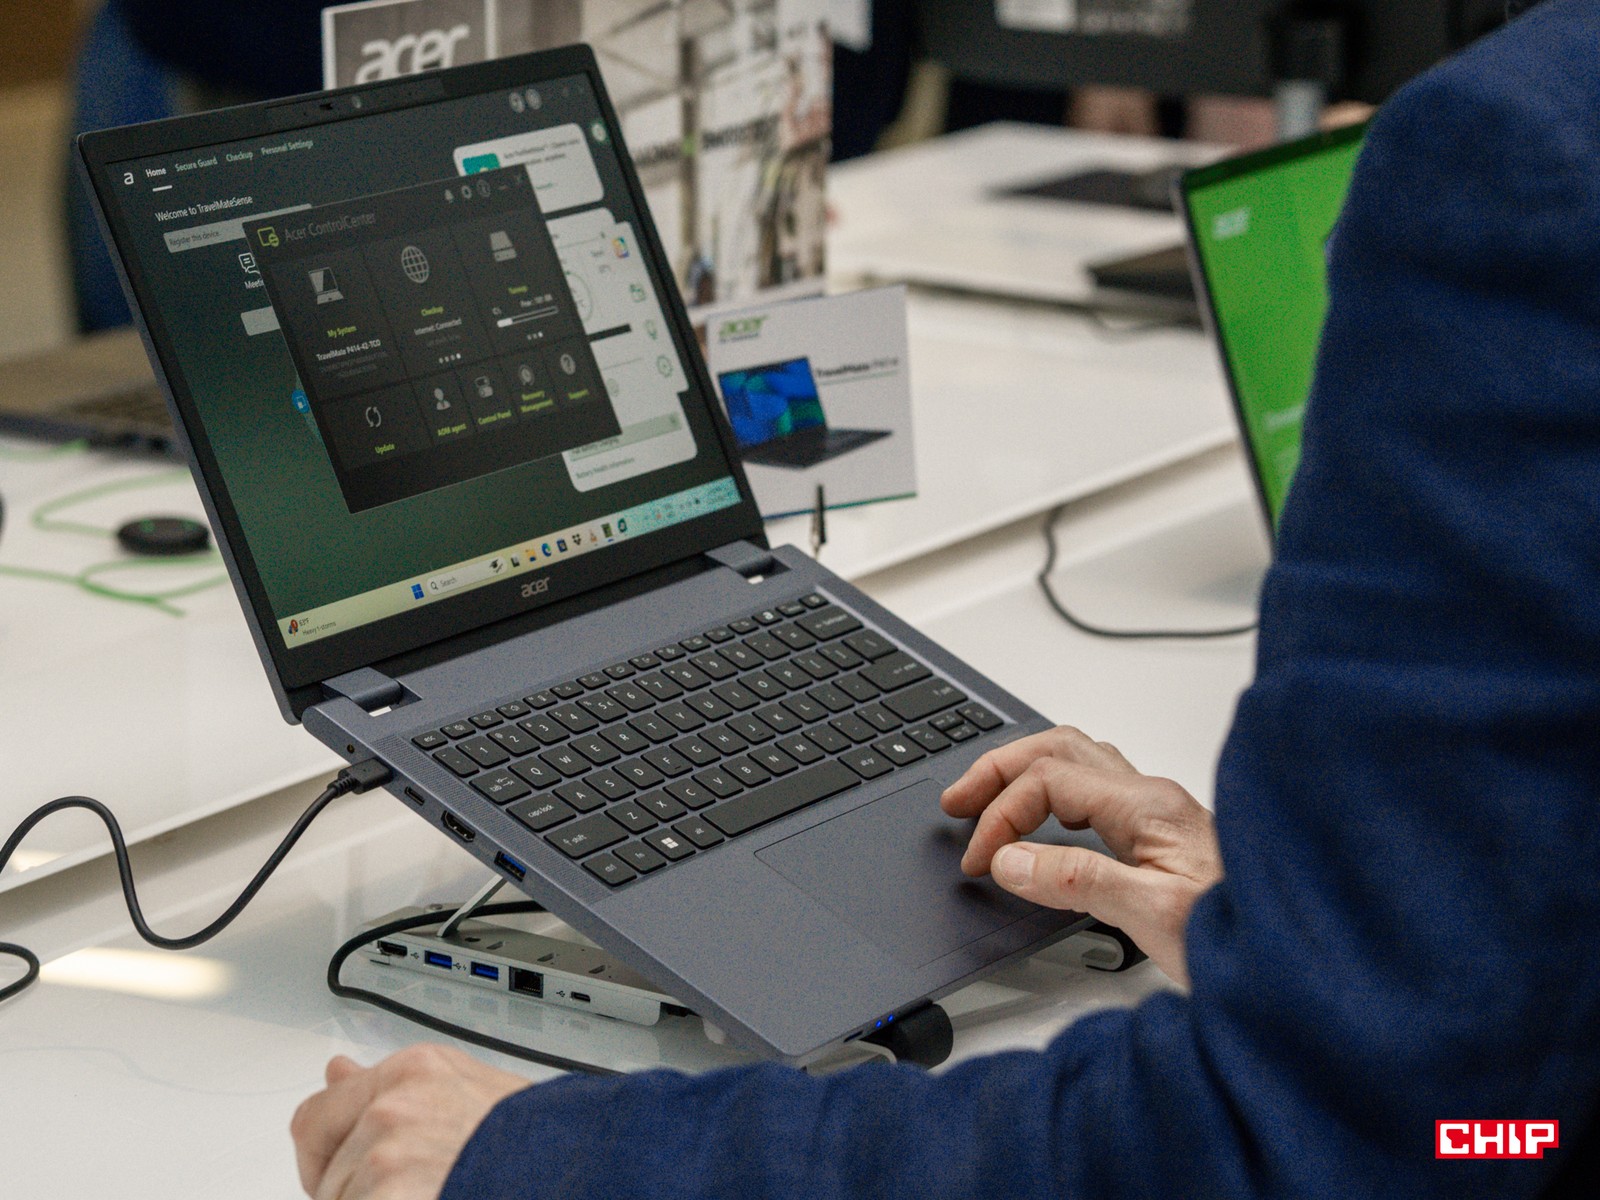 Acer robi wszystko, żeby laptopy z ChromeOS nie były synonimem elektronicznych maszyn do pisania